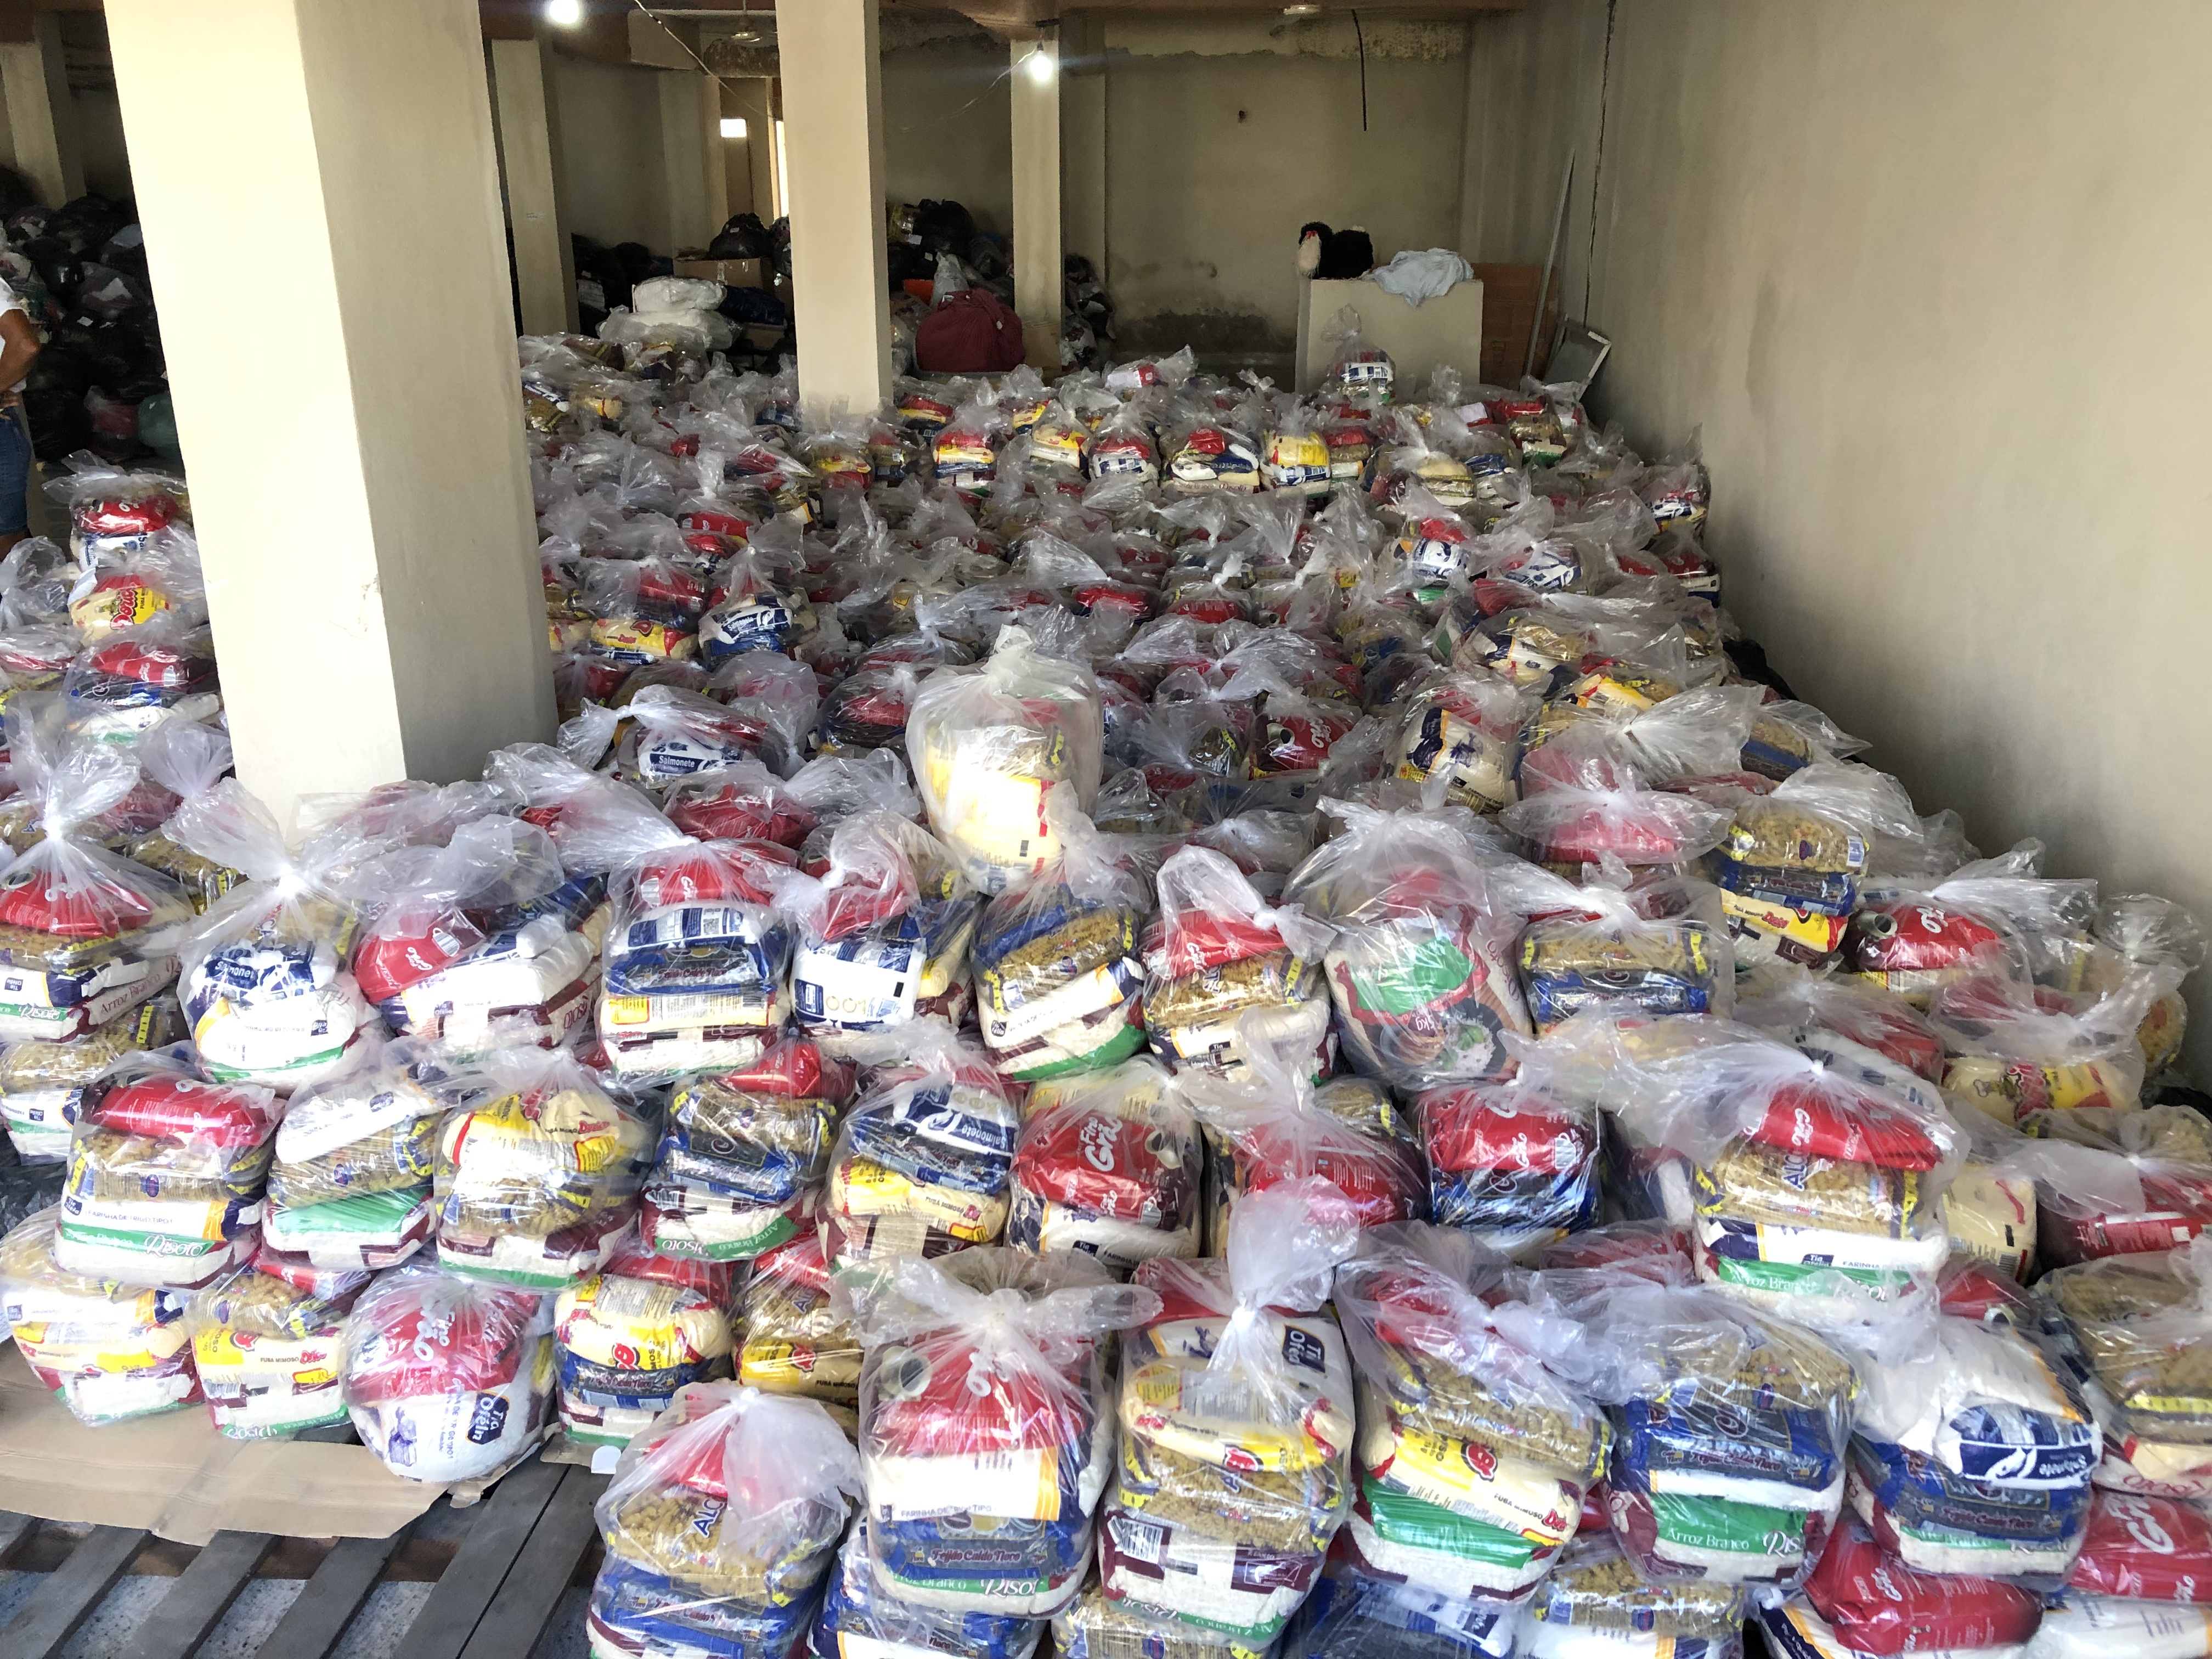 Associação Evangelizar doa 8 toneladas de alimentos às vítimas da enchentes em Mimoso do Sul